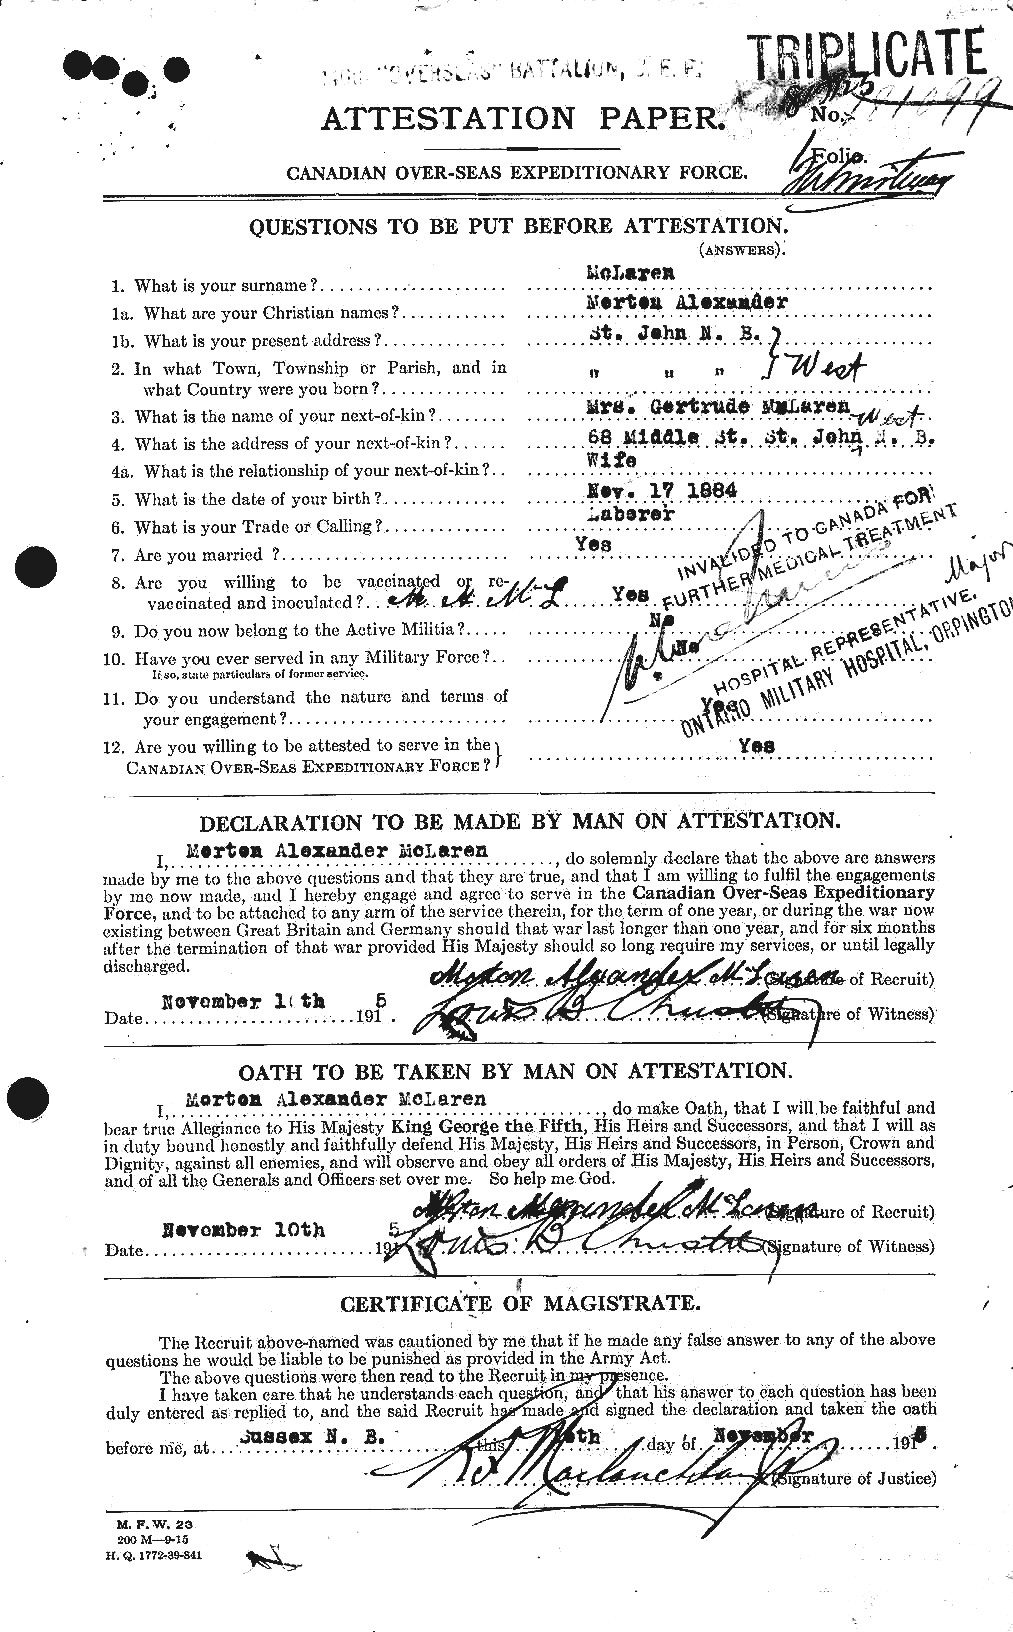 Dossiers du Personnel de la Première Guerre mondiale - CEC 535943a